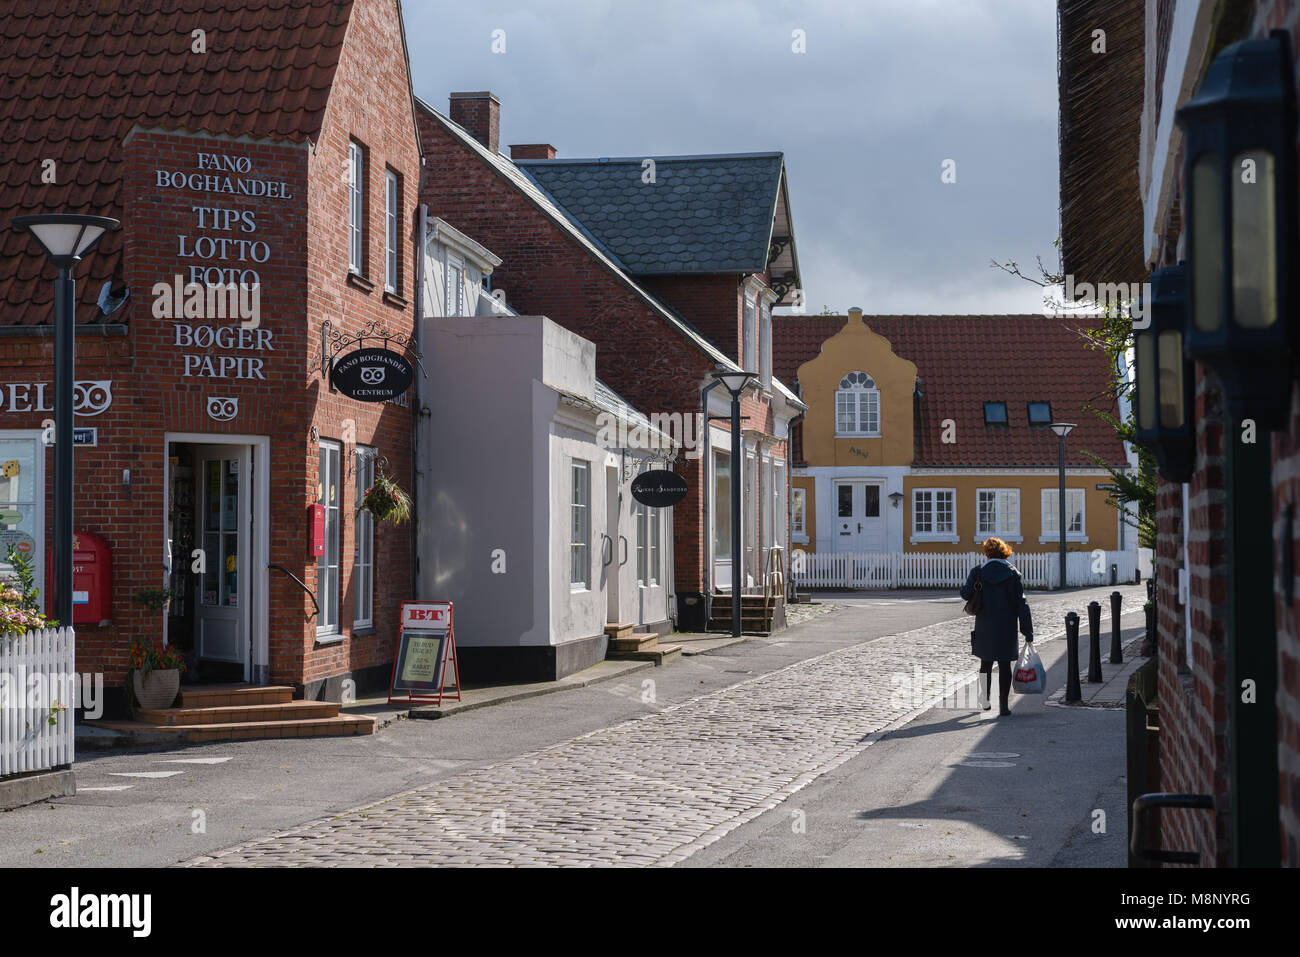 Ciottoli stone street attraverso il centro della città, tipiche case danese in Nordby, isola di Fanoe, nello Jutland, Danimarca Foto Stock